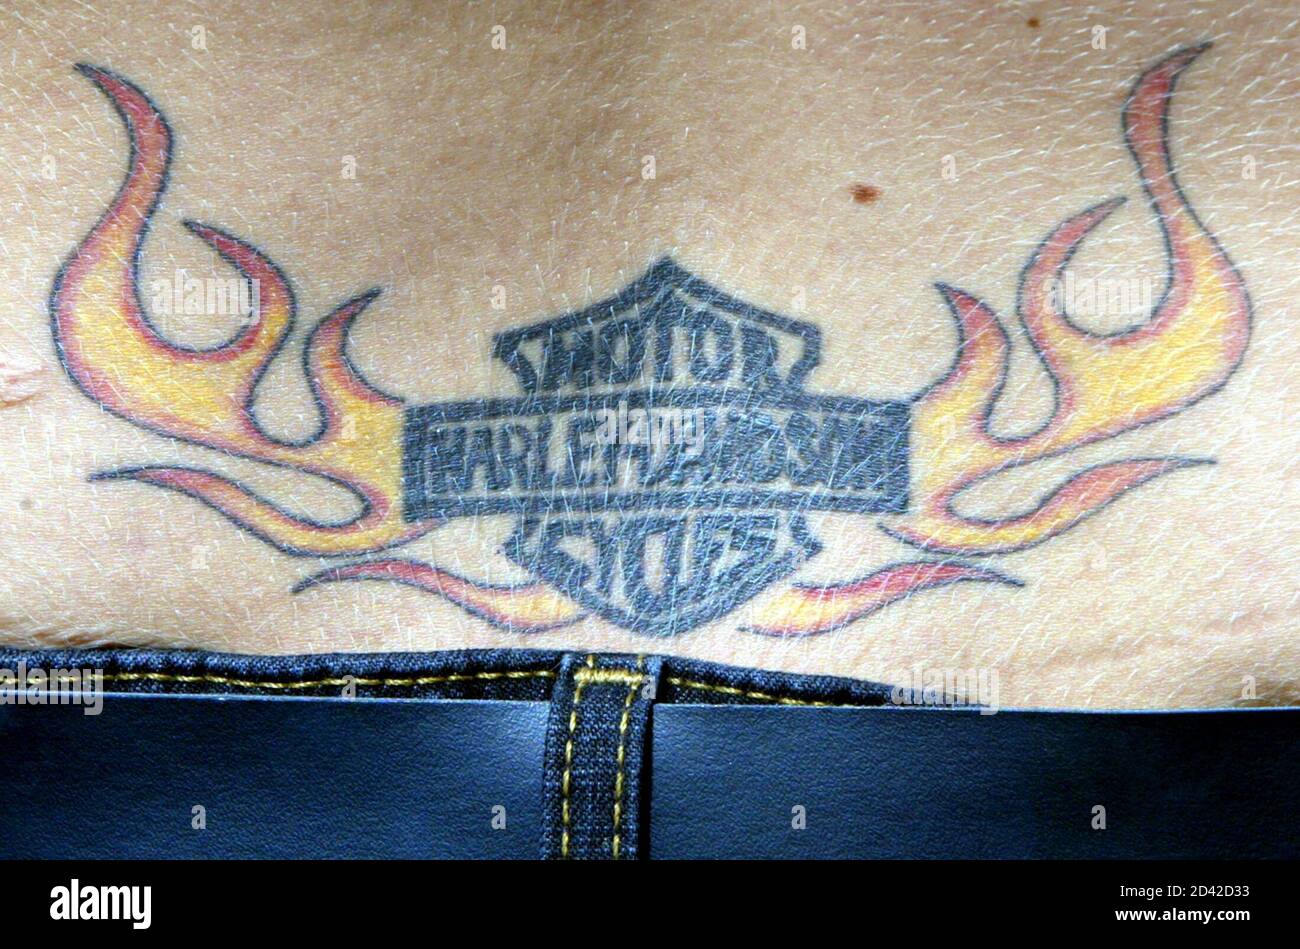 Une femme montre un tatouage sur son bas dos à la fête Harley-Davidson dans le centre-ville de Milwaukee, le 30 août 2003. La légendaire compagnie américaine de moto célèbre son 100e anniversaire en quatre jours. Banque D'Images